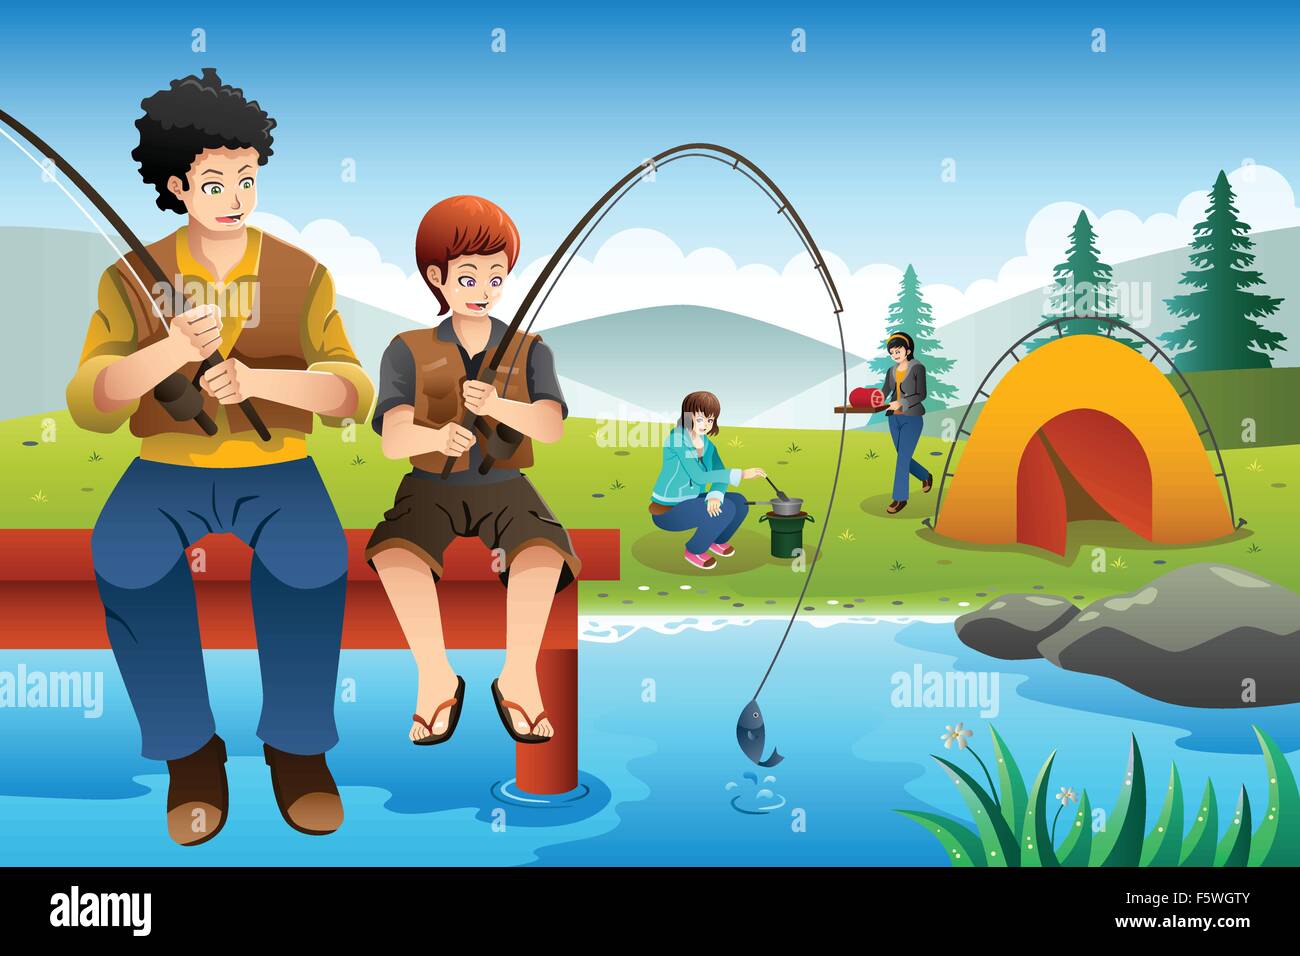 Un vecteur illustration de père et fils la pêche, tandis que mère et fille la cuisine près de la tente de camping Illustration de Vecteur